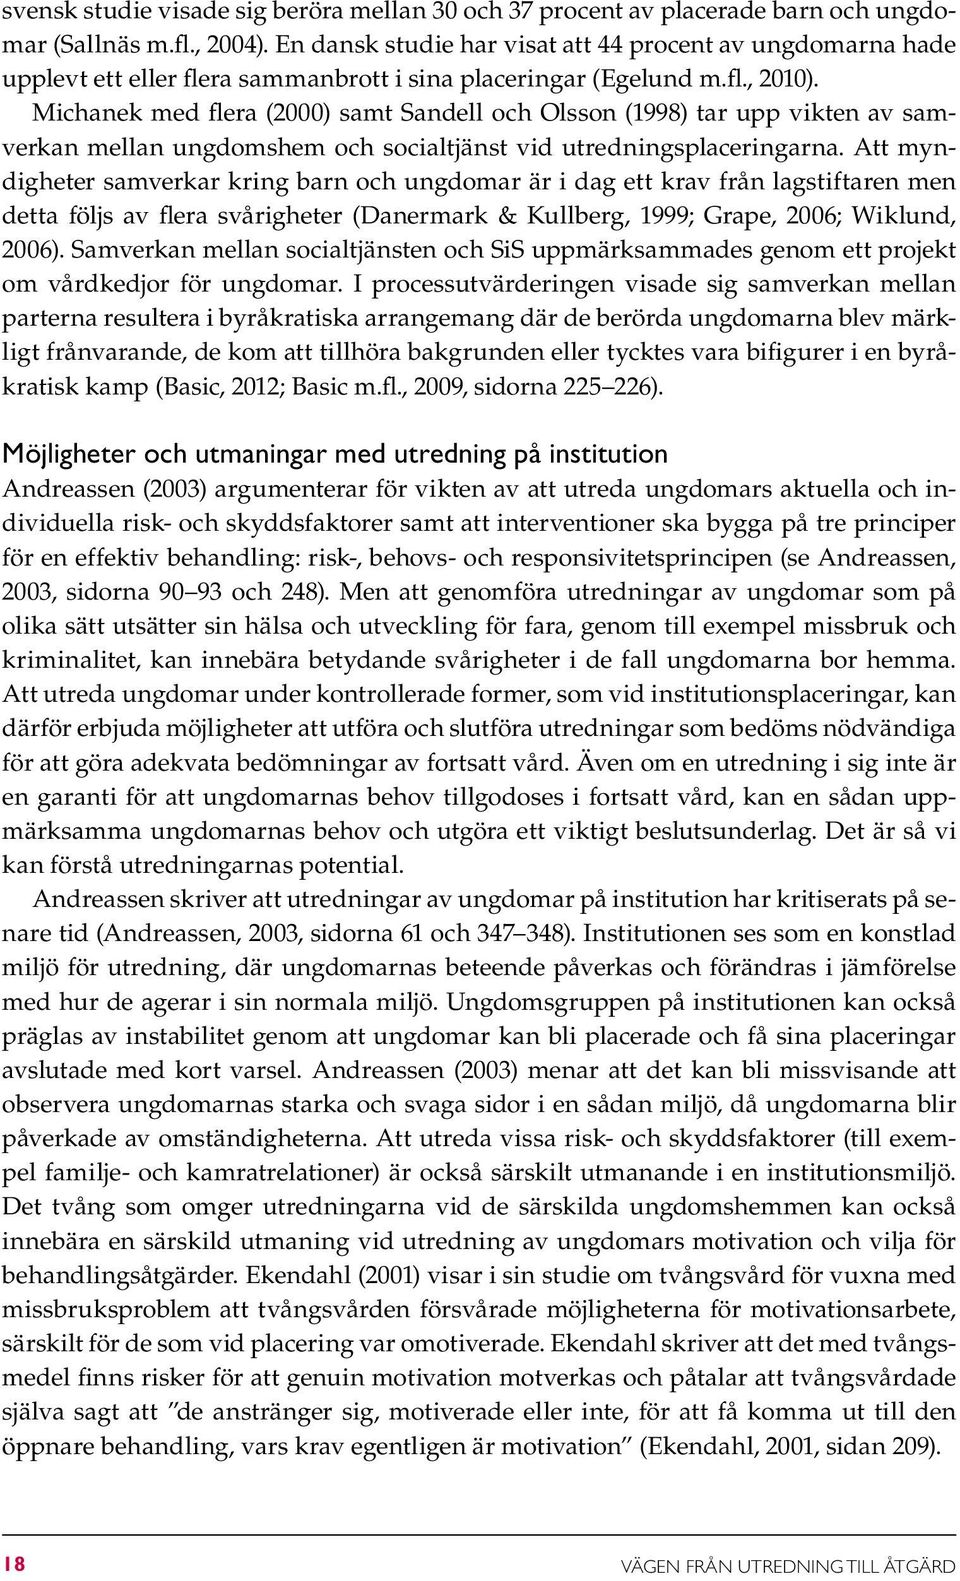 Michanek med flera (2000) samt Sandell och Olsson (1998) tar upp vikten av sam - verkan mellan ungdomshem och socialtjänst vid utredningsplaceringarna.